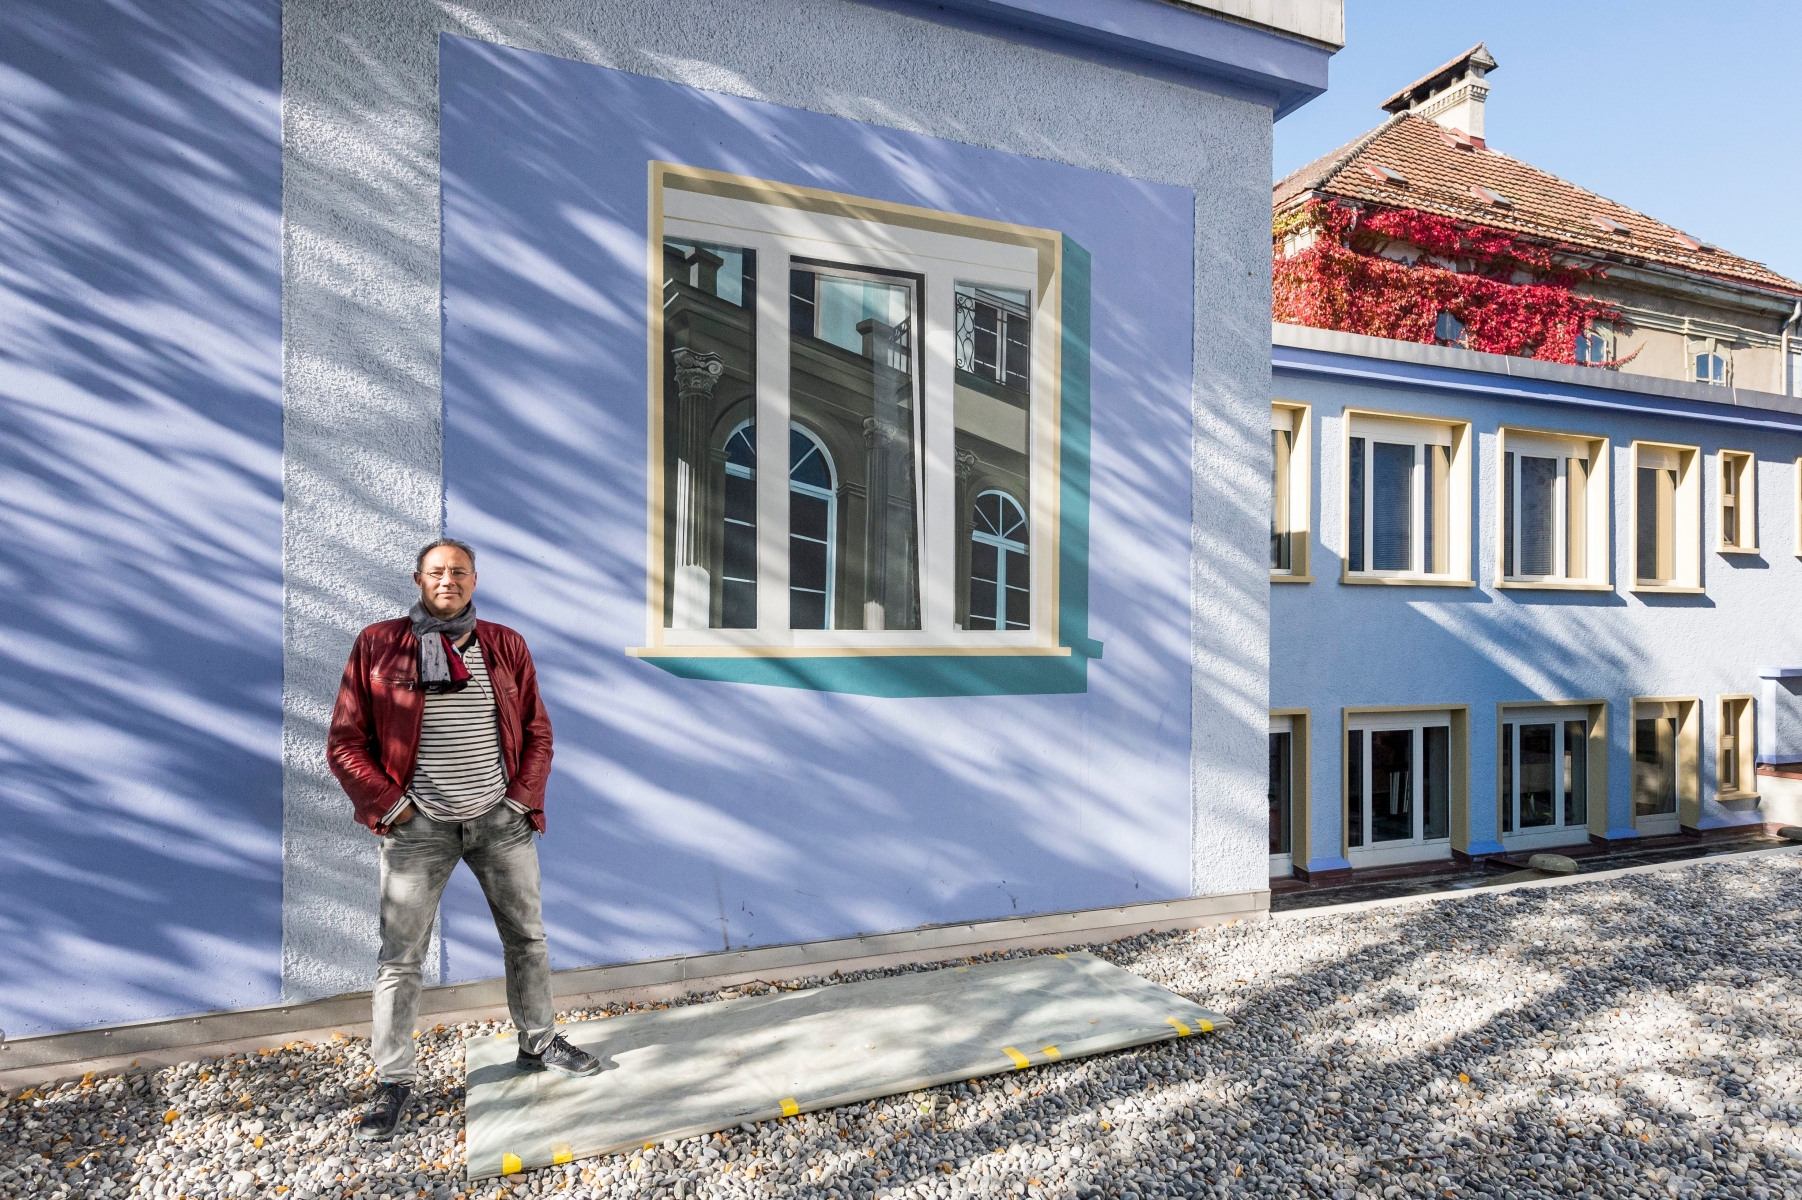 L'artiste chaux-de-fonniers Mauro Frascotti a peint un trompe l'oeil a la Rue Jaquet-Droz



La Chaux-de-Fonds, le 30.09.2015



Photo : Lucas Vuitel